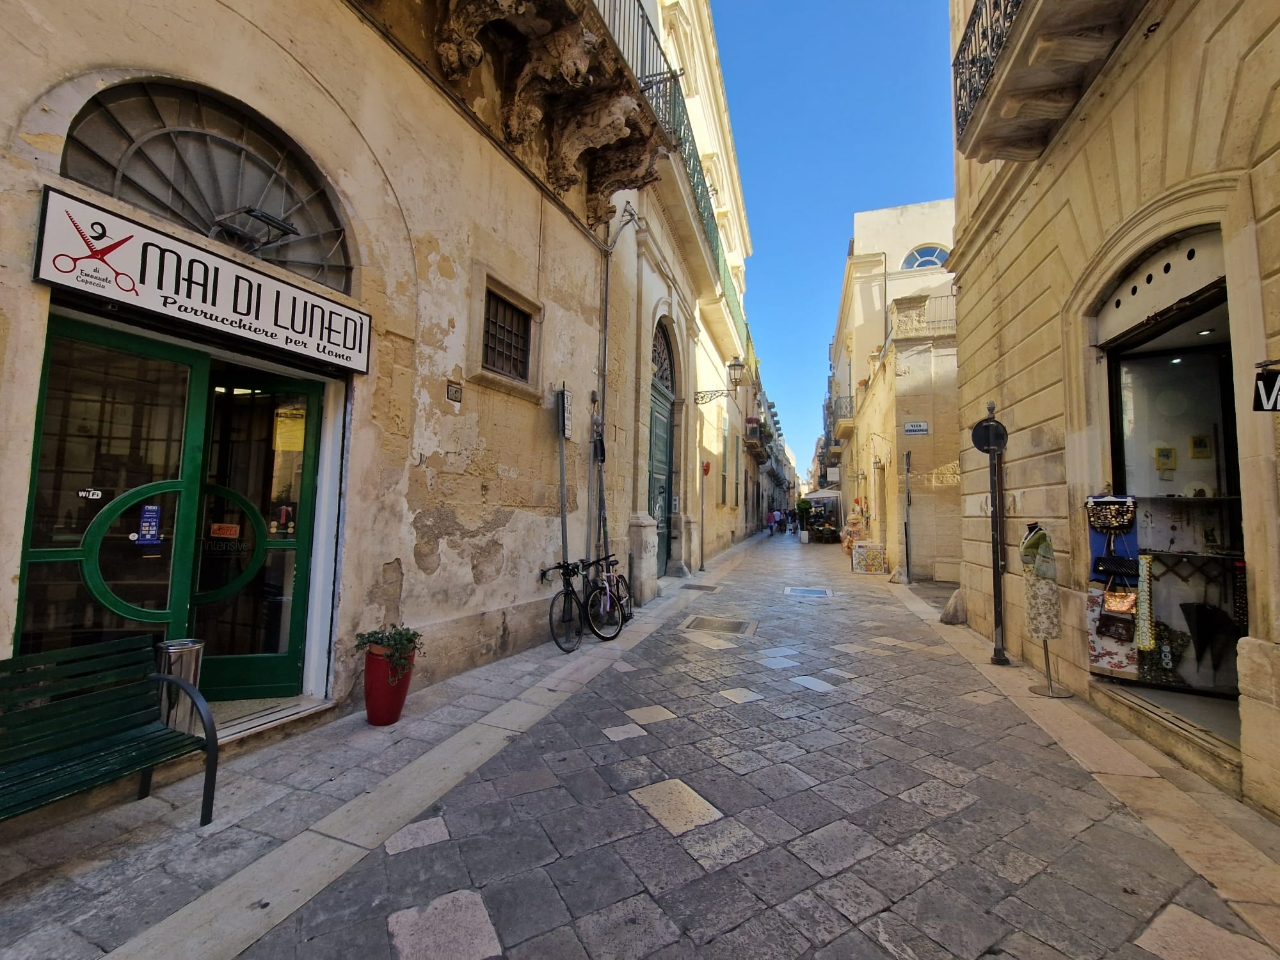 Locale commerciale in vendita a Lecce